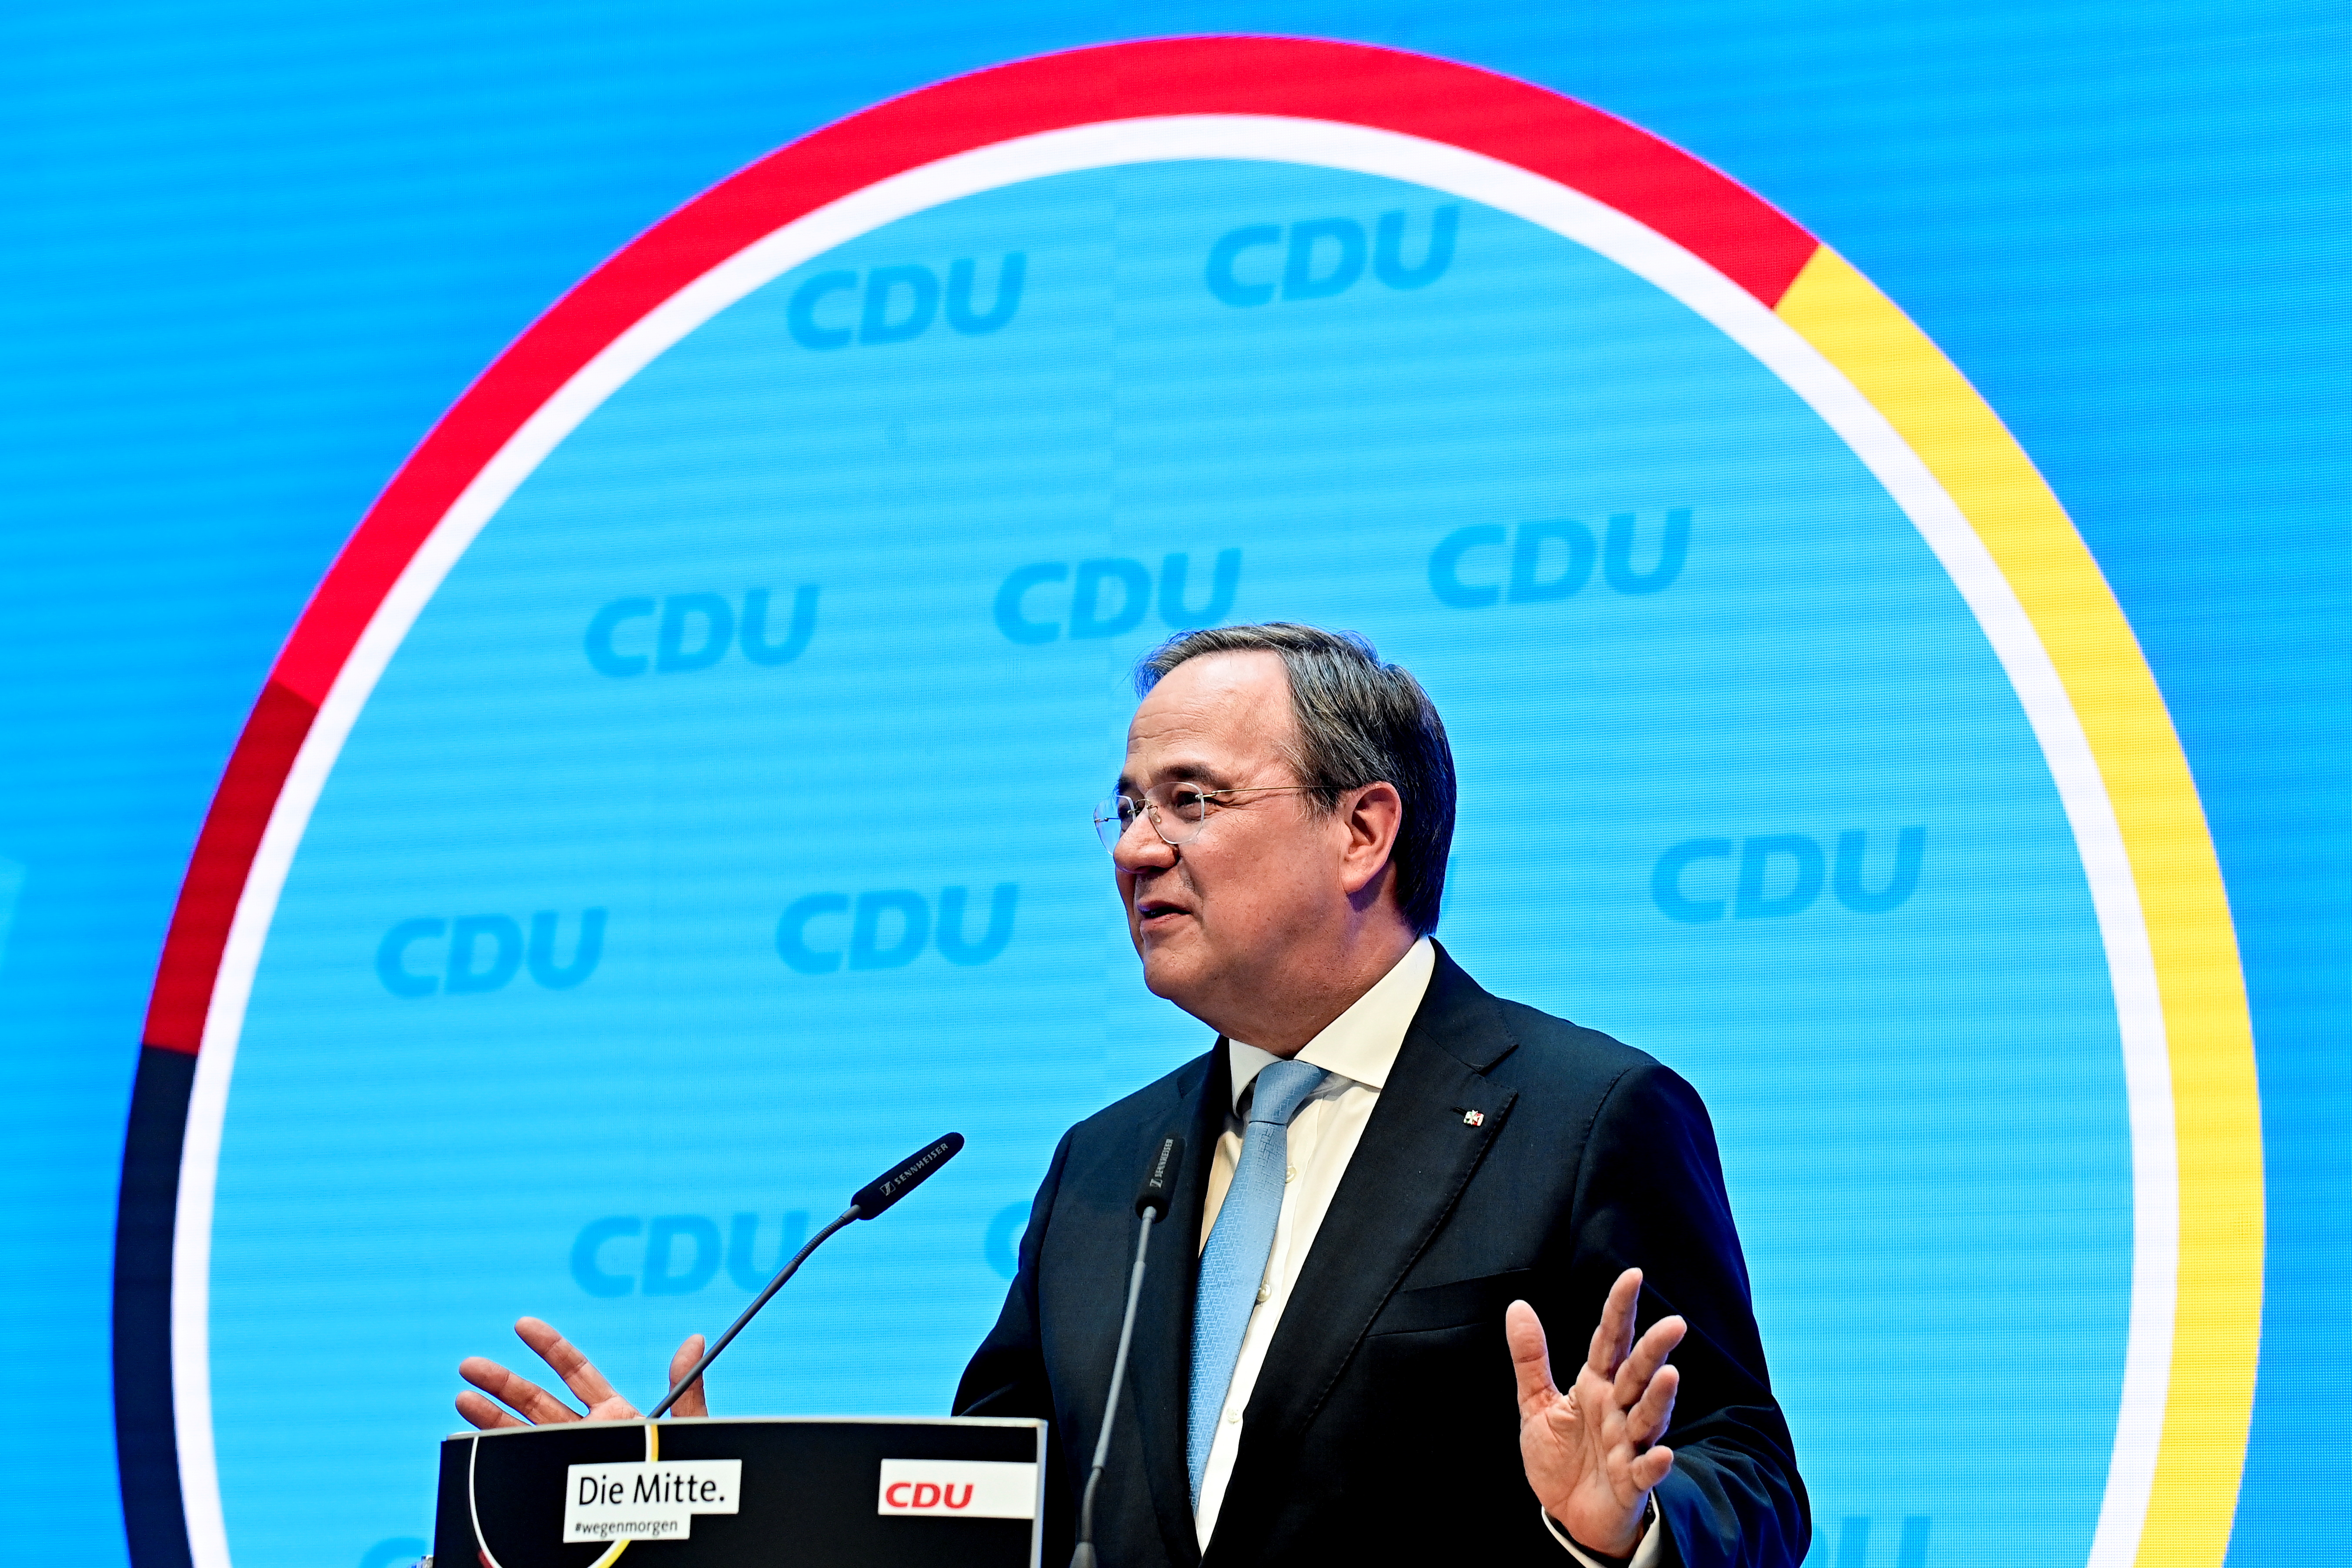 Thủ hiến bang North Rhine-Westphalia và người đứng đầu đảng Liên minh Dân chủ Cơ đốc giáo (CDU) Armin Laschet tổ chức một cuộc họp báo tại trụ sở CDU ở Berlin, Đức ngày 20 tháng 2021 năm XNUMX. Tobias Schwarz / Pool via REUTERS / File Photo